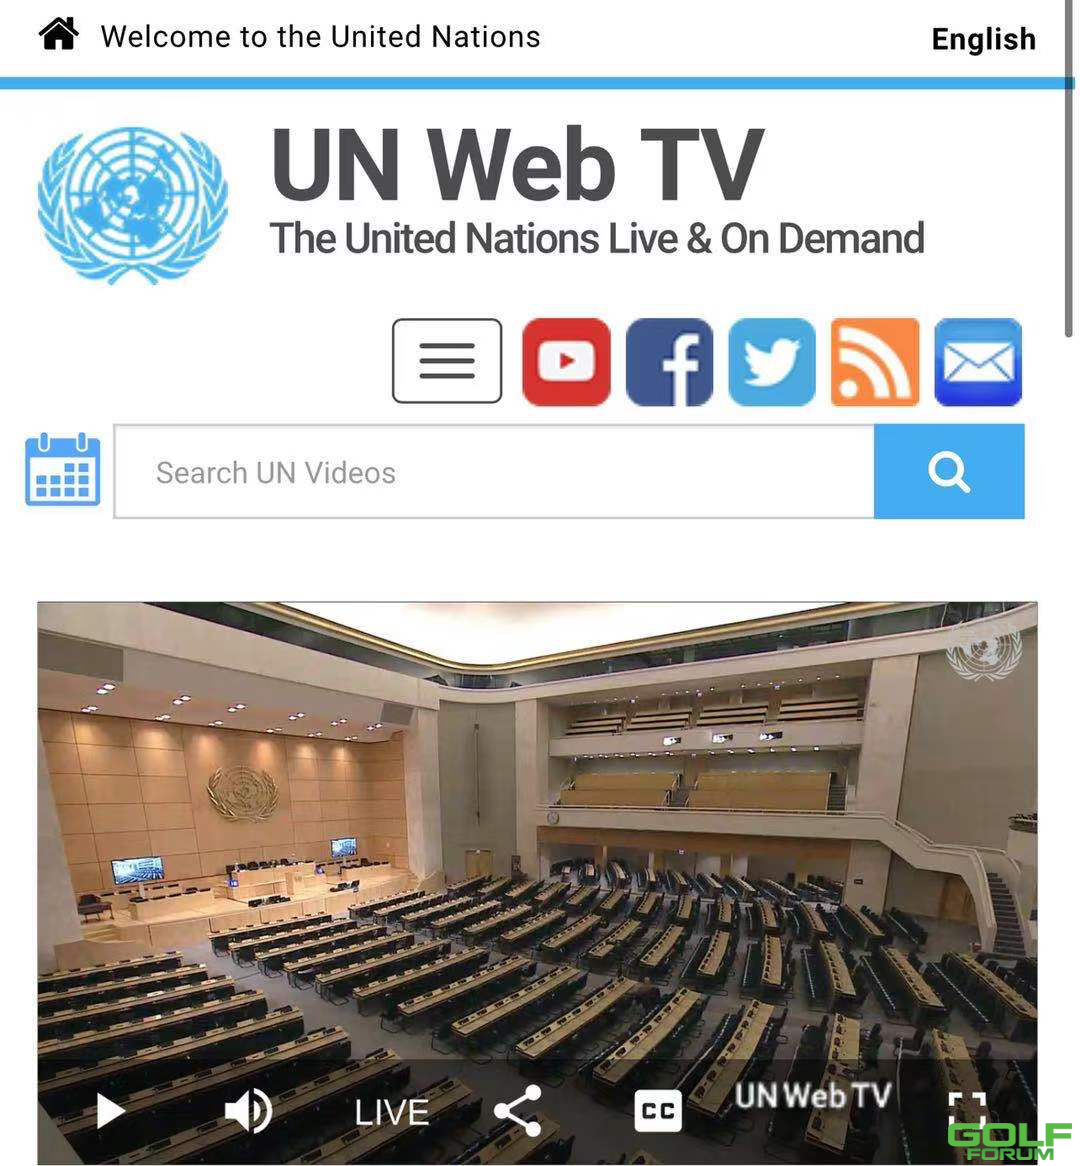 95后女生林冰清出席第65届联合国妇女大会